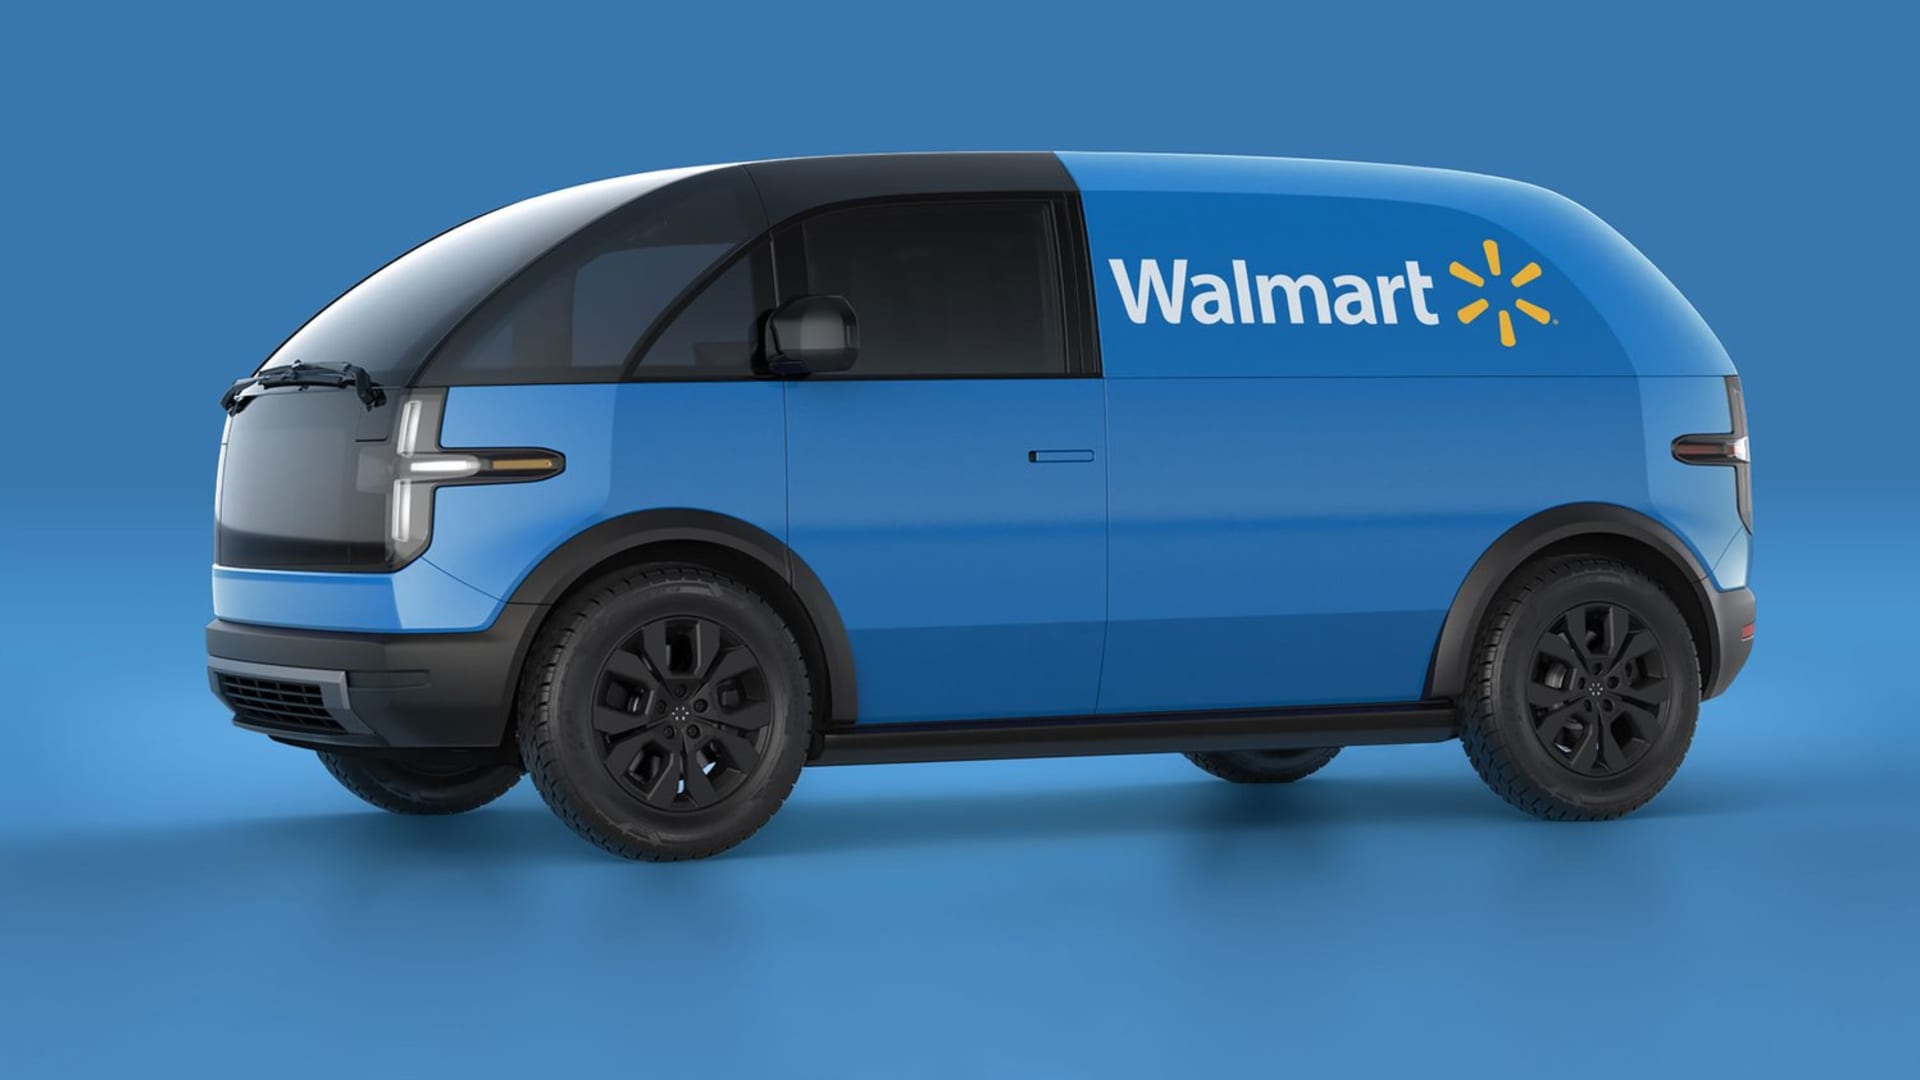 Canoo Walmart deal for 4,500 vans sends EV stock jumping